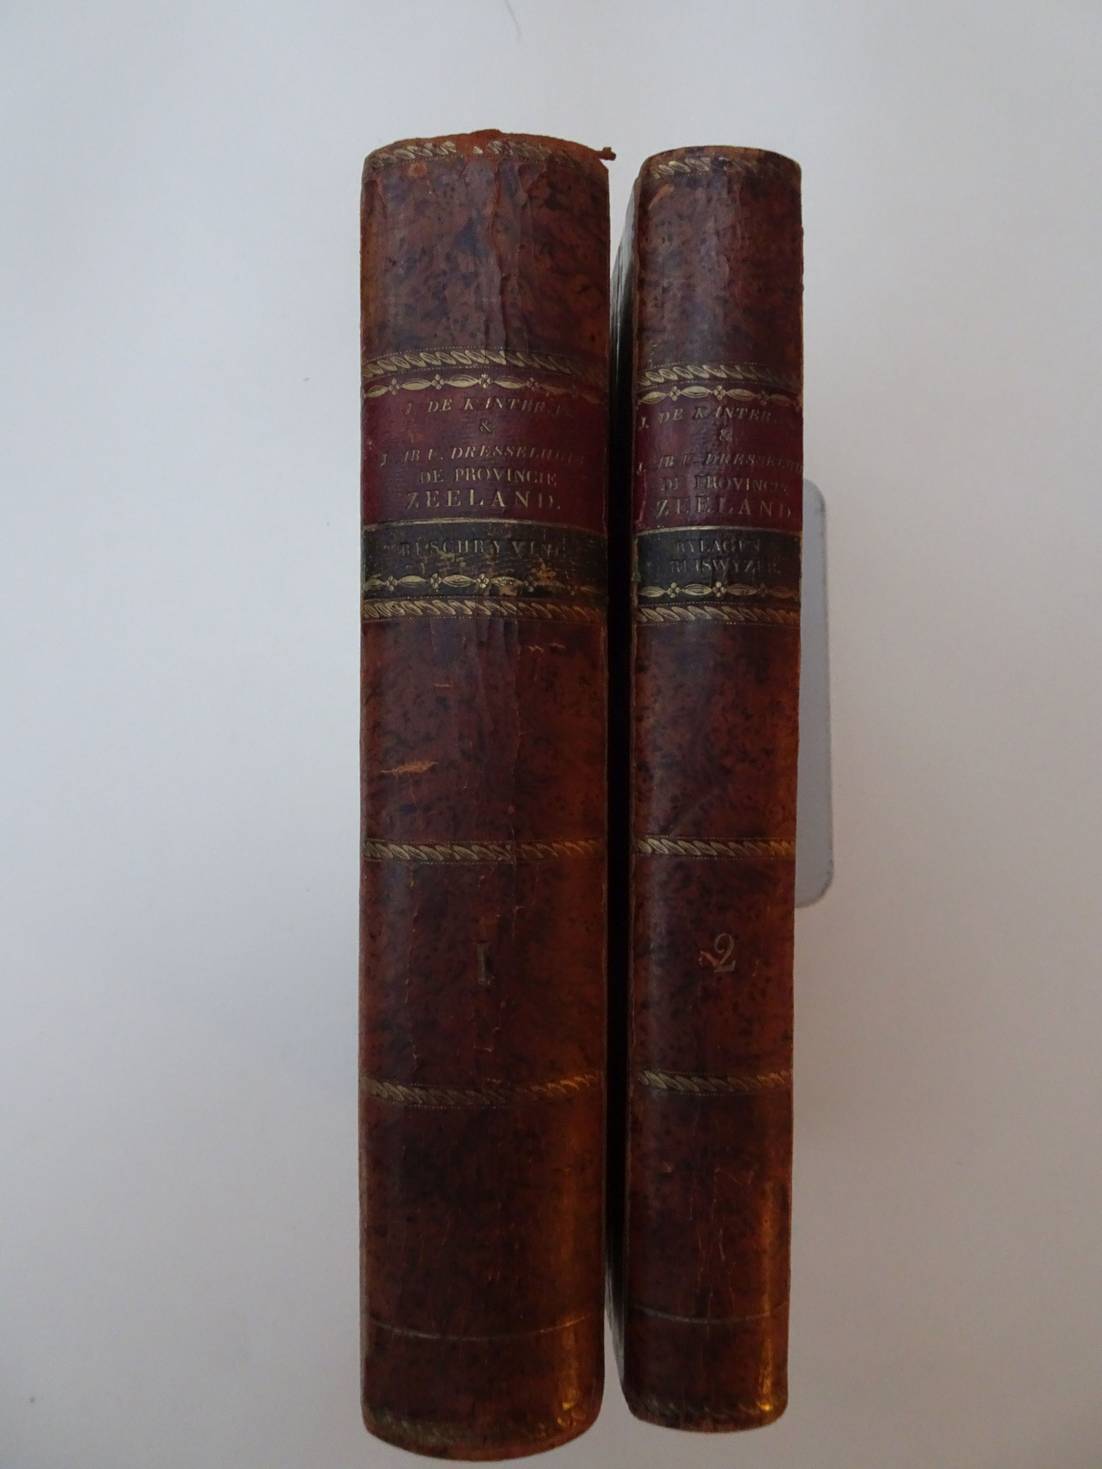 Kanter, J. de, en J. ab Utrecht Dresselhuis - De Provincie Zeeland (2 vols.)